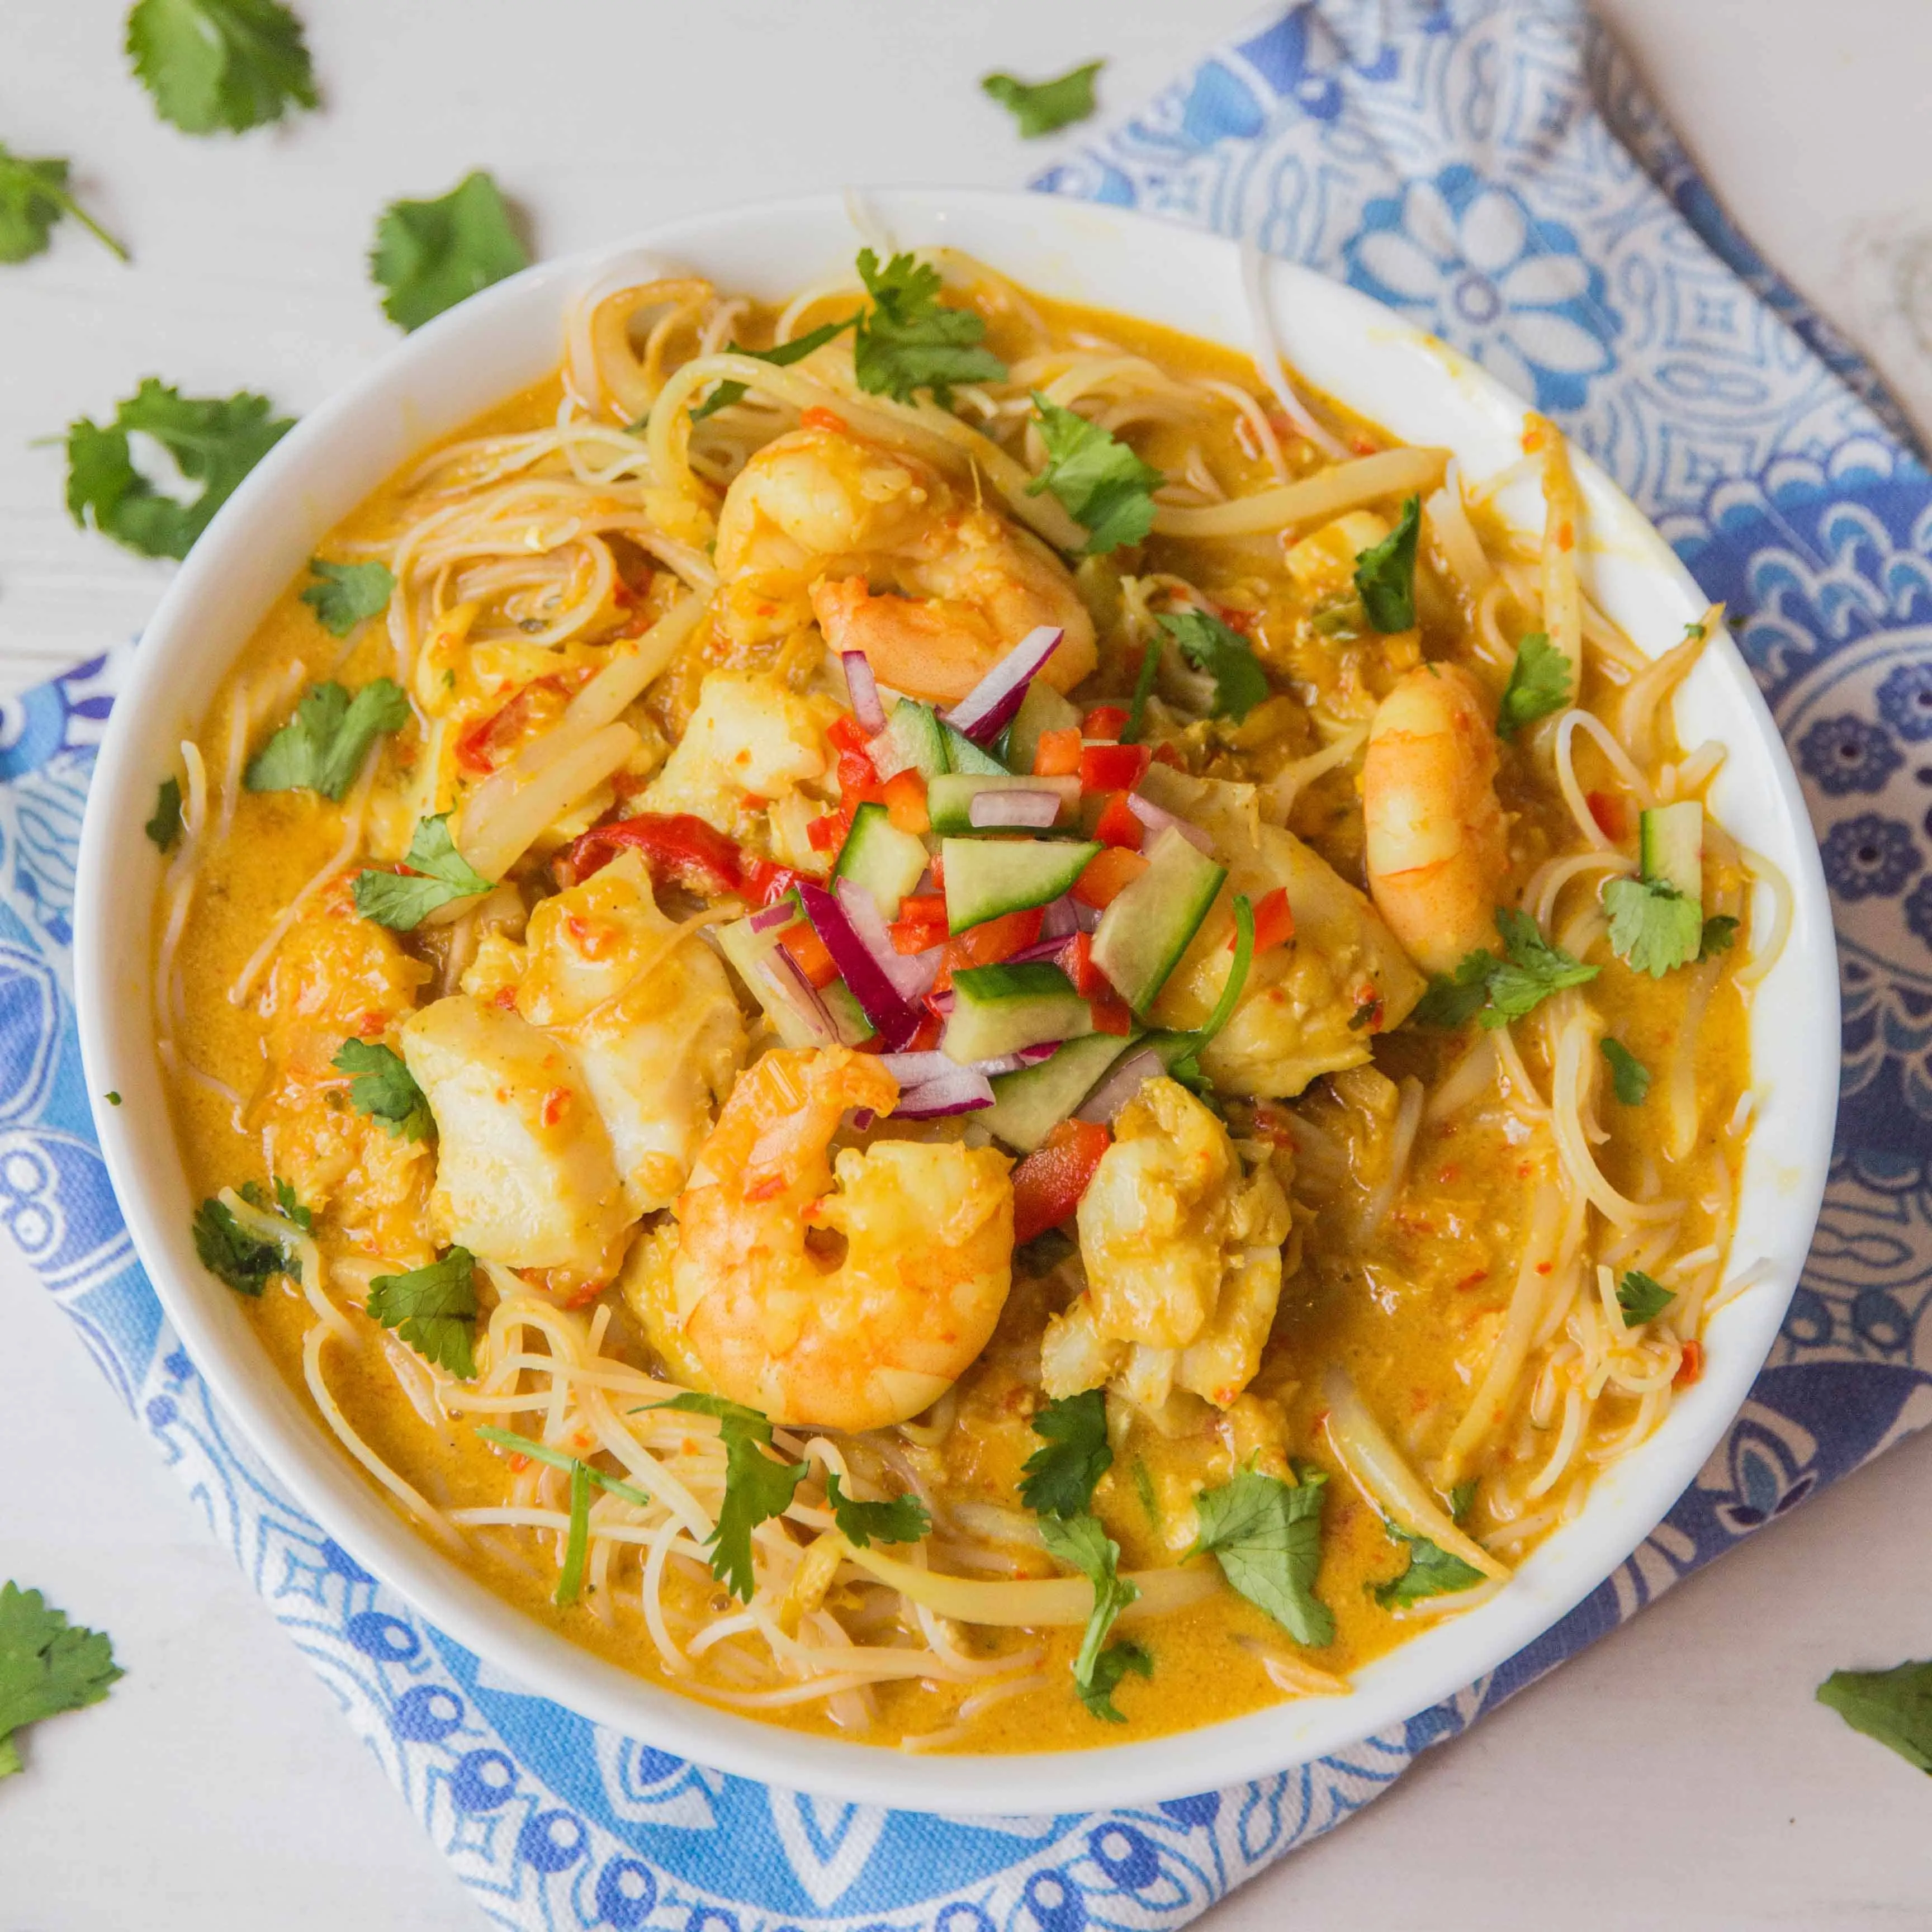 Seafood Laksa - Slurpy, spicy Thai noodle soup